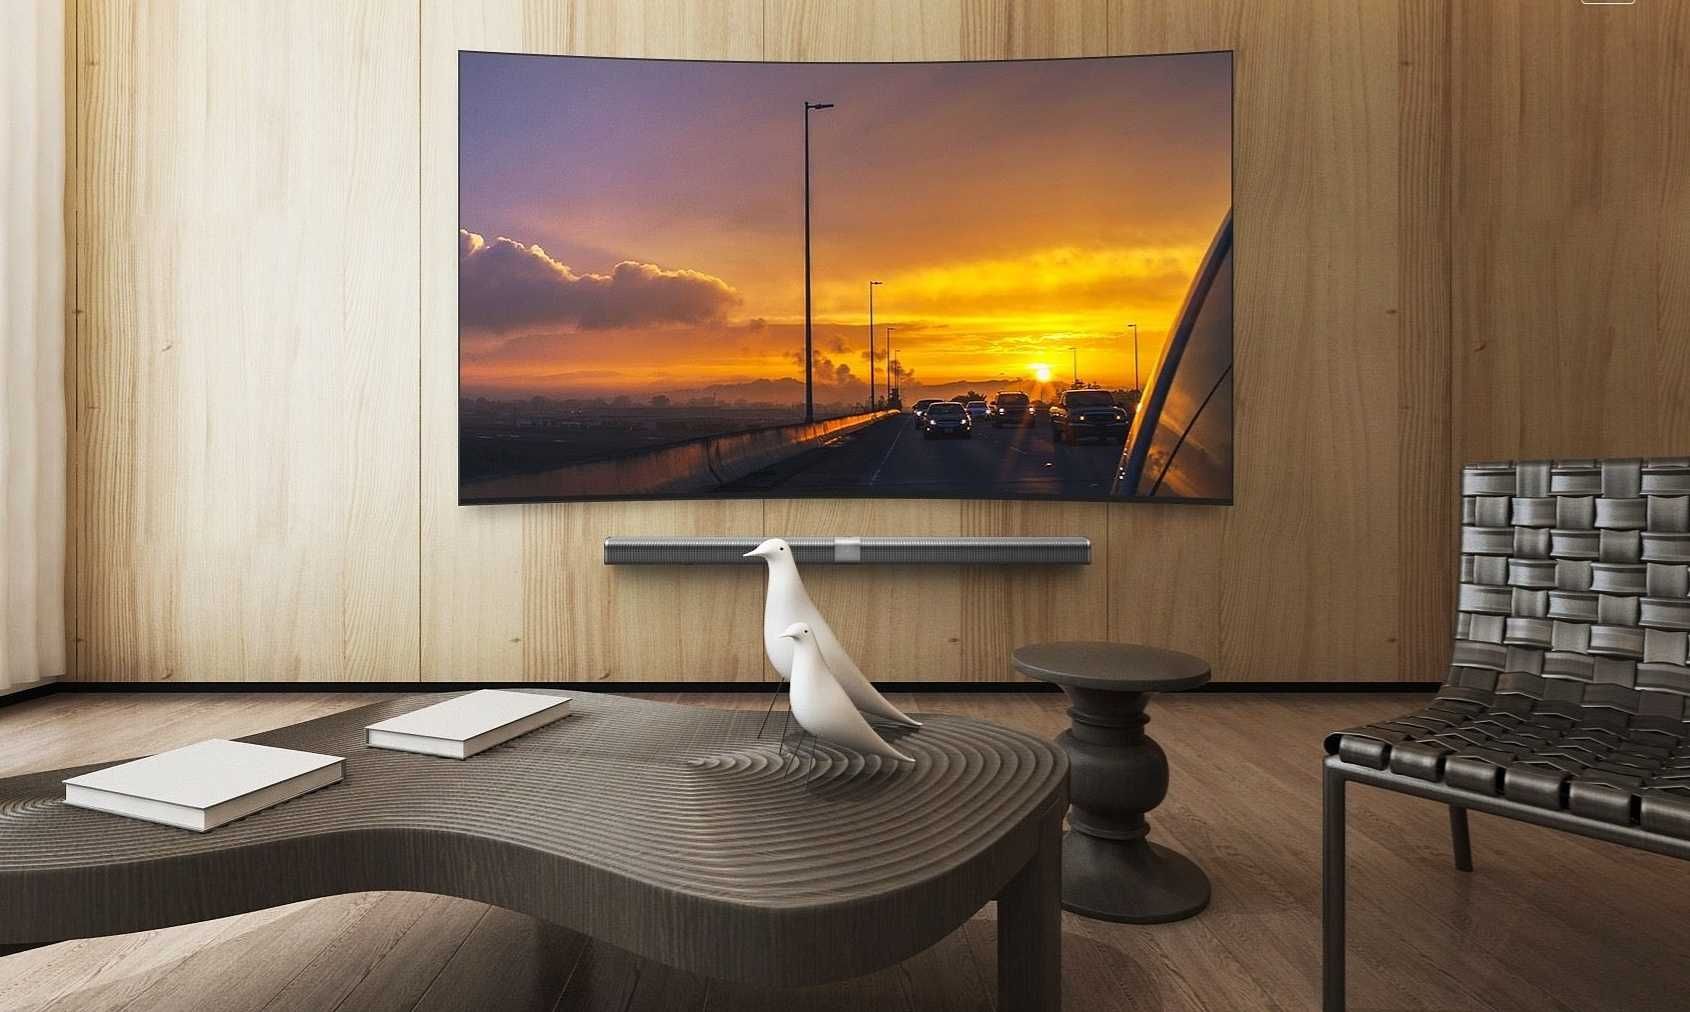 Телевизор Xiaomi Curved. Самсунг телевизор 65 настенный. Телевизор Samsung 65" дюймов, Curved на стене. Xiaomi mi TV 3s 55" <витрина>. Лучшие телевизоры диагональю 65